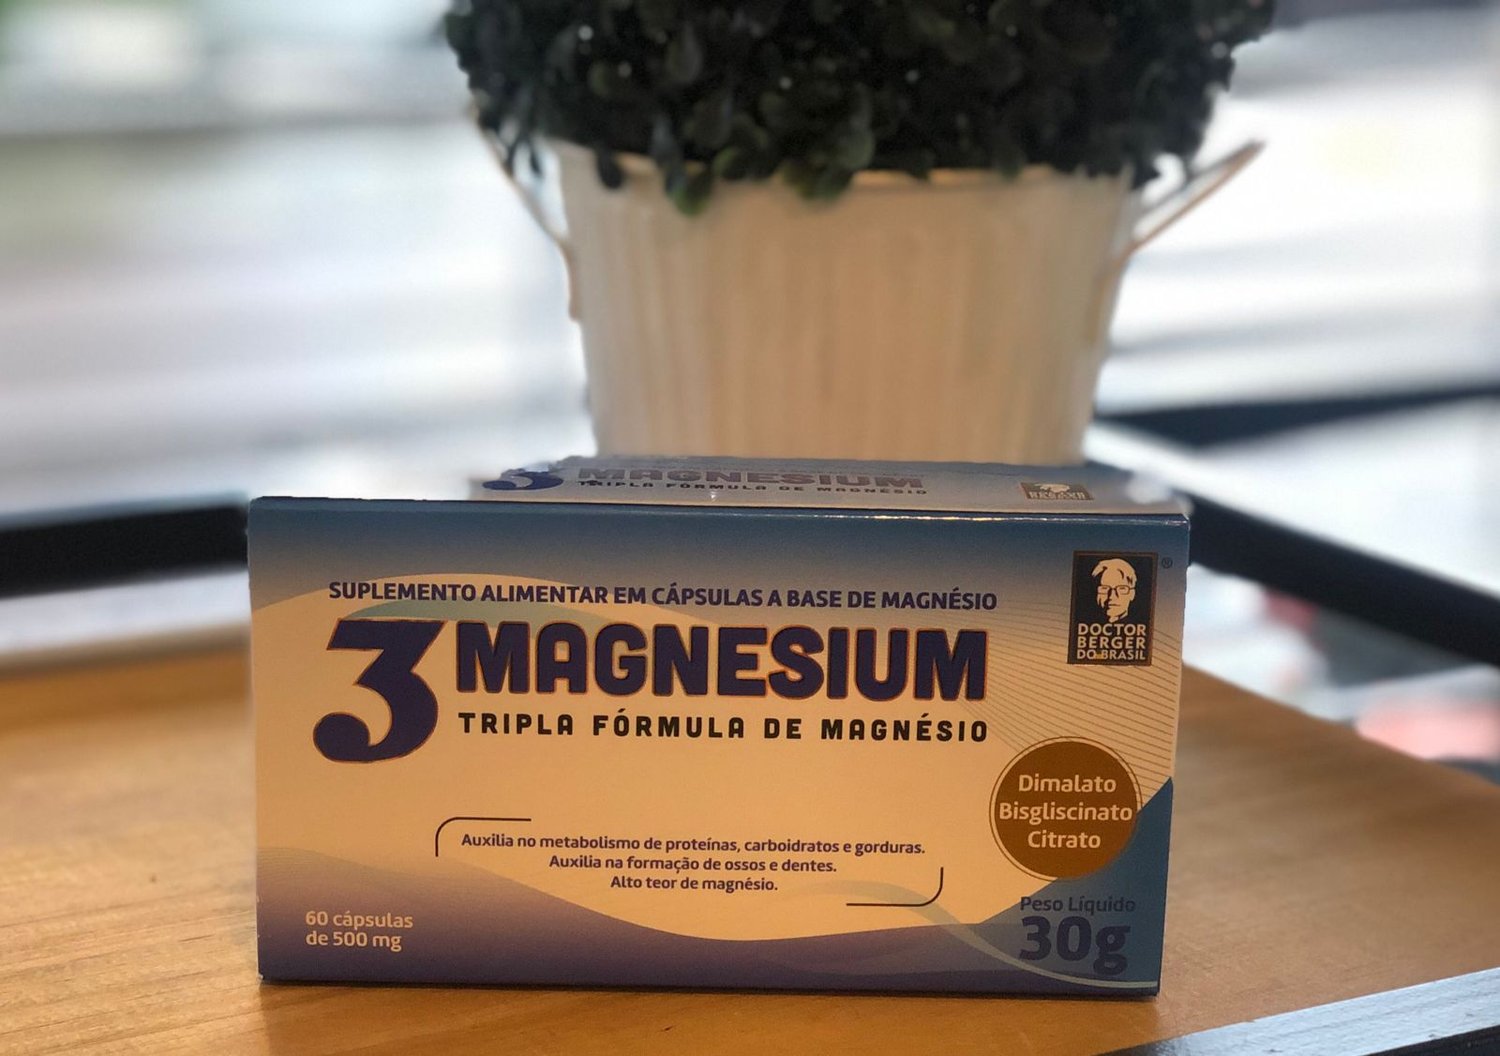 3 magnesium Tripla Fórmula de Magnésio 500mg Doctor Berger - Nuttrindo